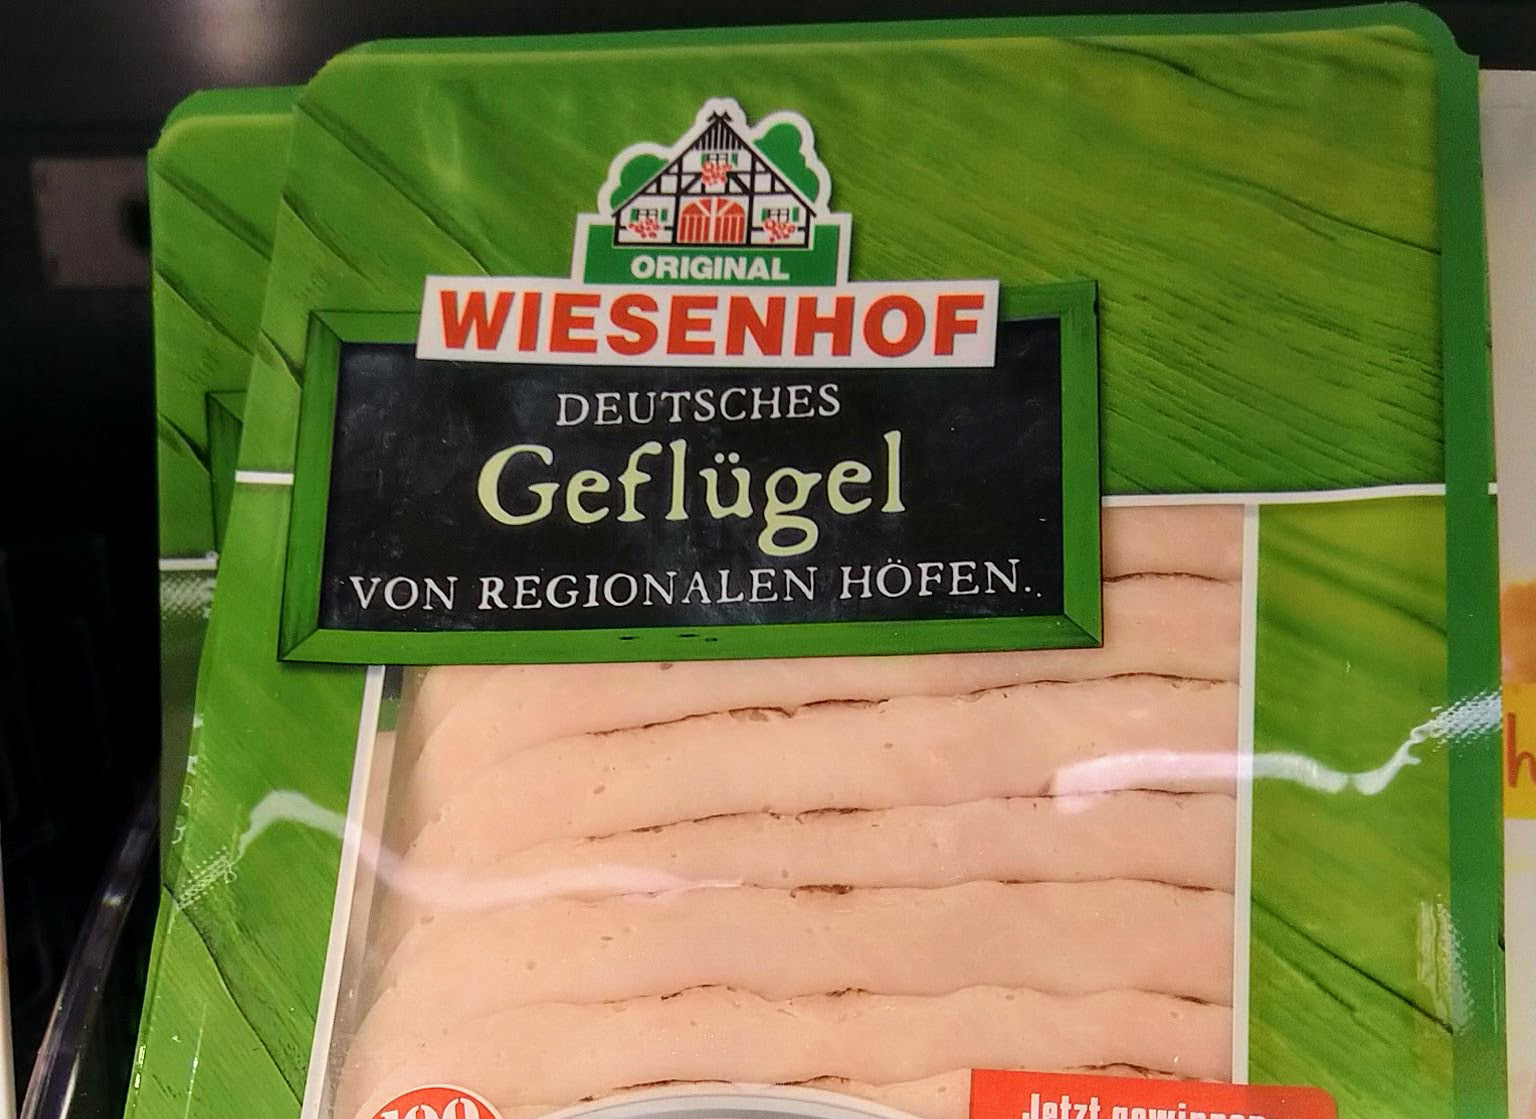 Wiesenhof: Omelett-Maker Oskar gewinnen - Code eingeben